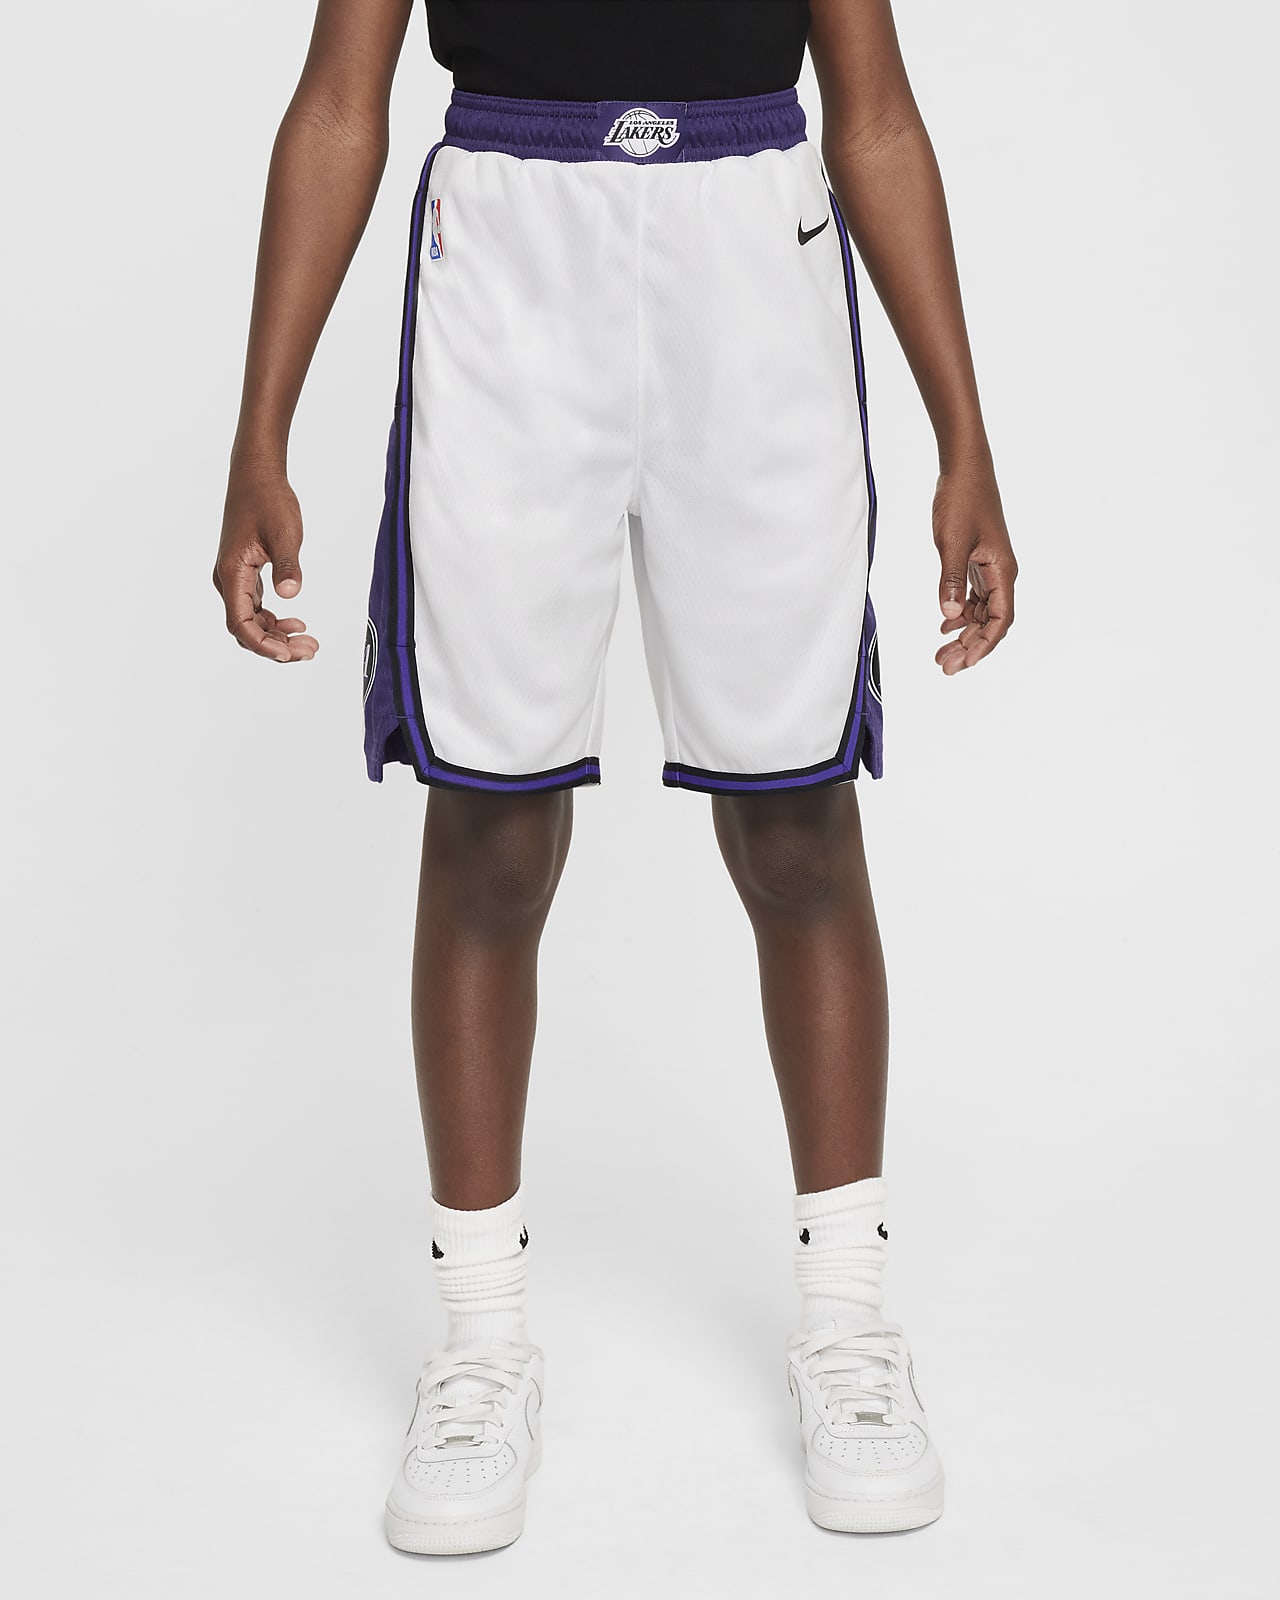 Los Angeles Lakers Nike Swingman NBA-shorts met Dri-FIT voor kids